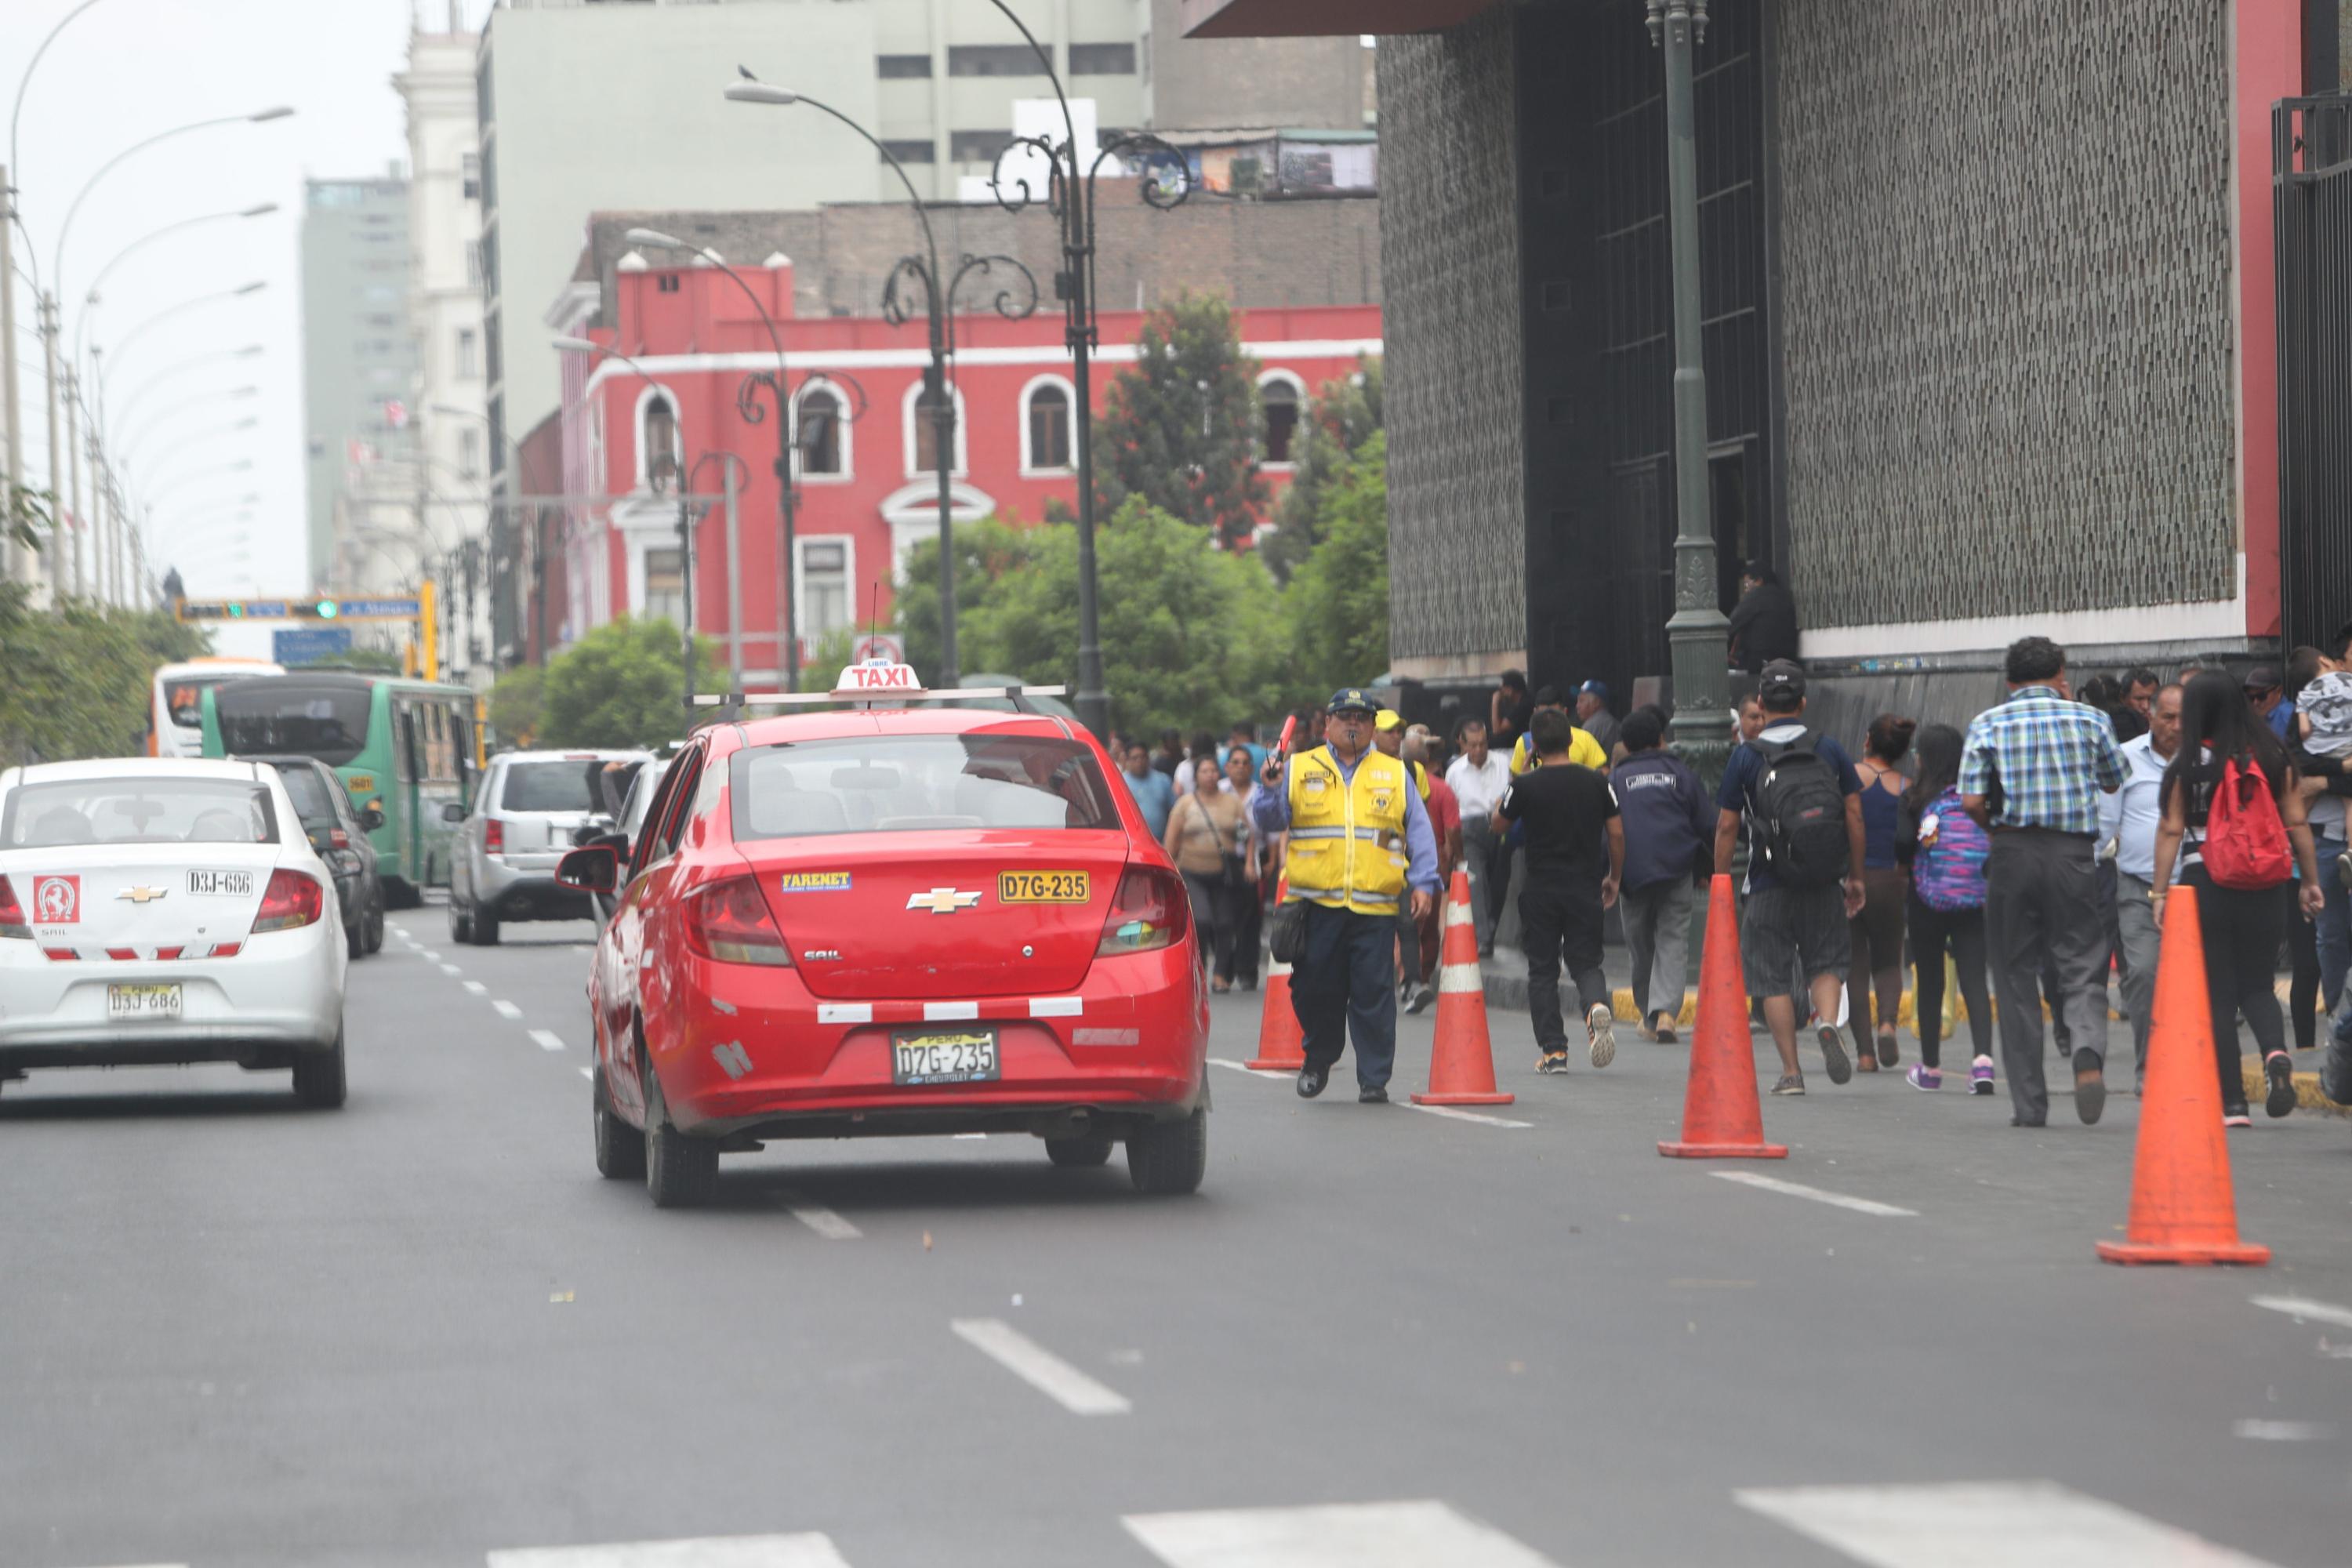 Choferes de colectivos usan varias calles como paraderos. Pasajeros también provocan caos deteniendo a estos taxistas informales en lugares no autorizados. (Foto: Rolly Reyna / El Comercio)